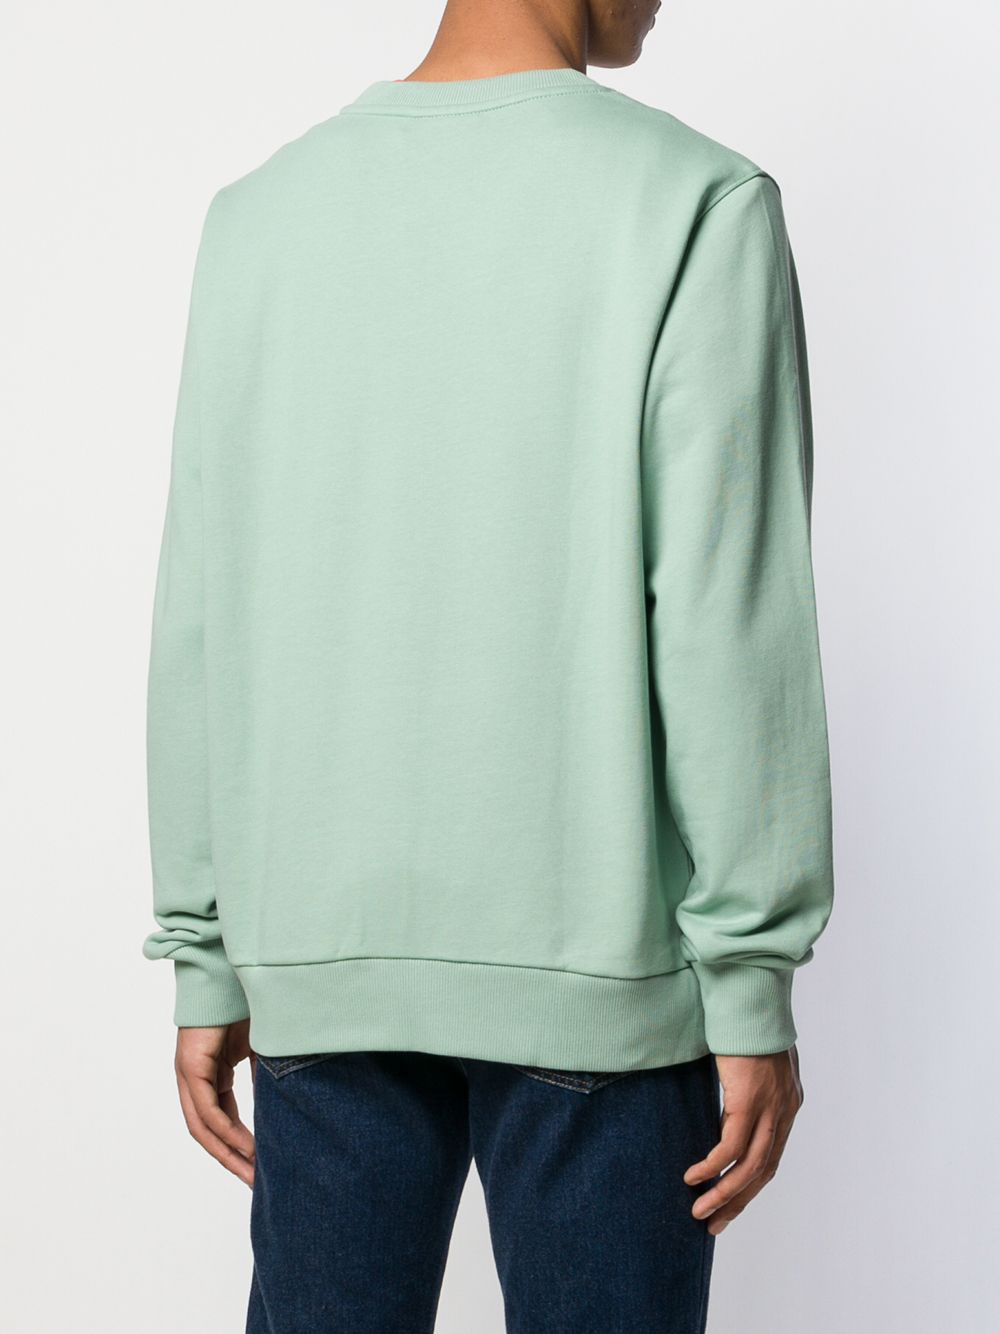 фото Calvin Klein свитер с логотипом